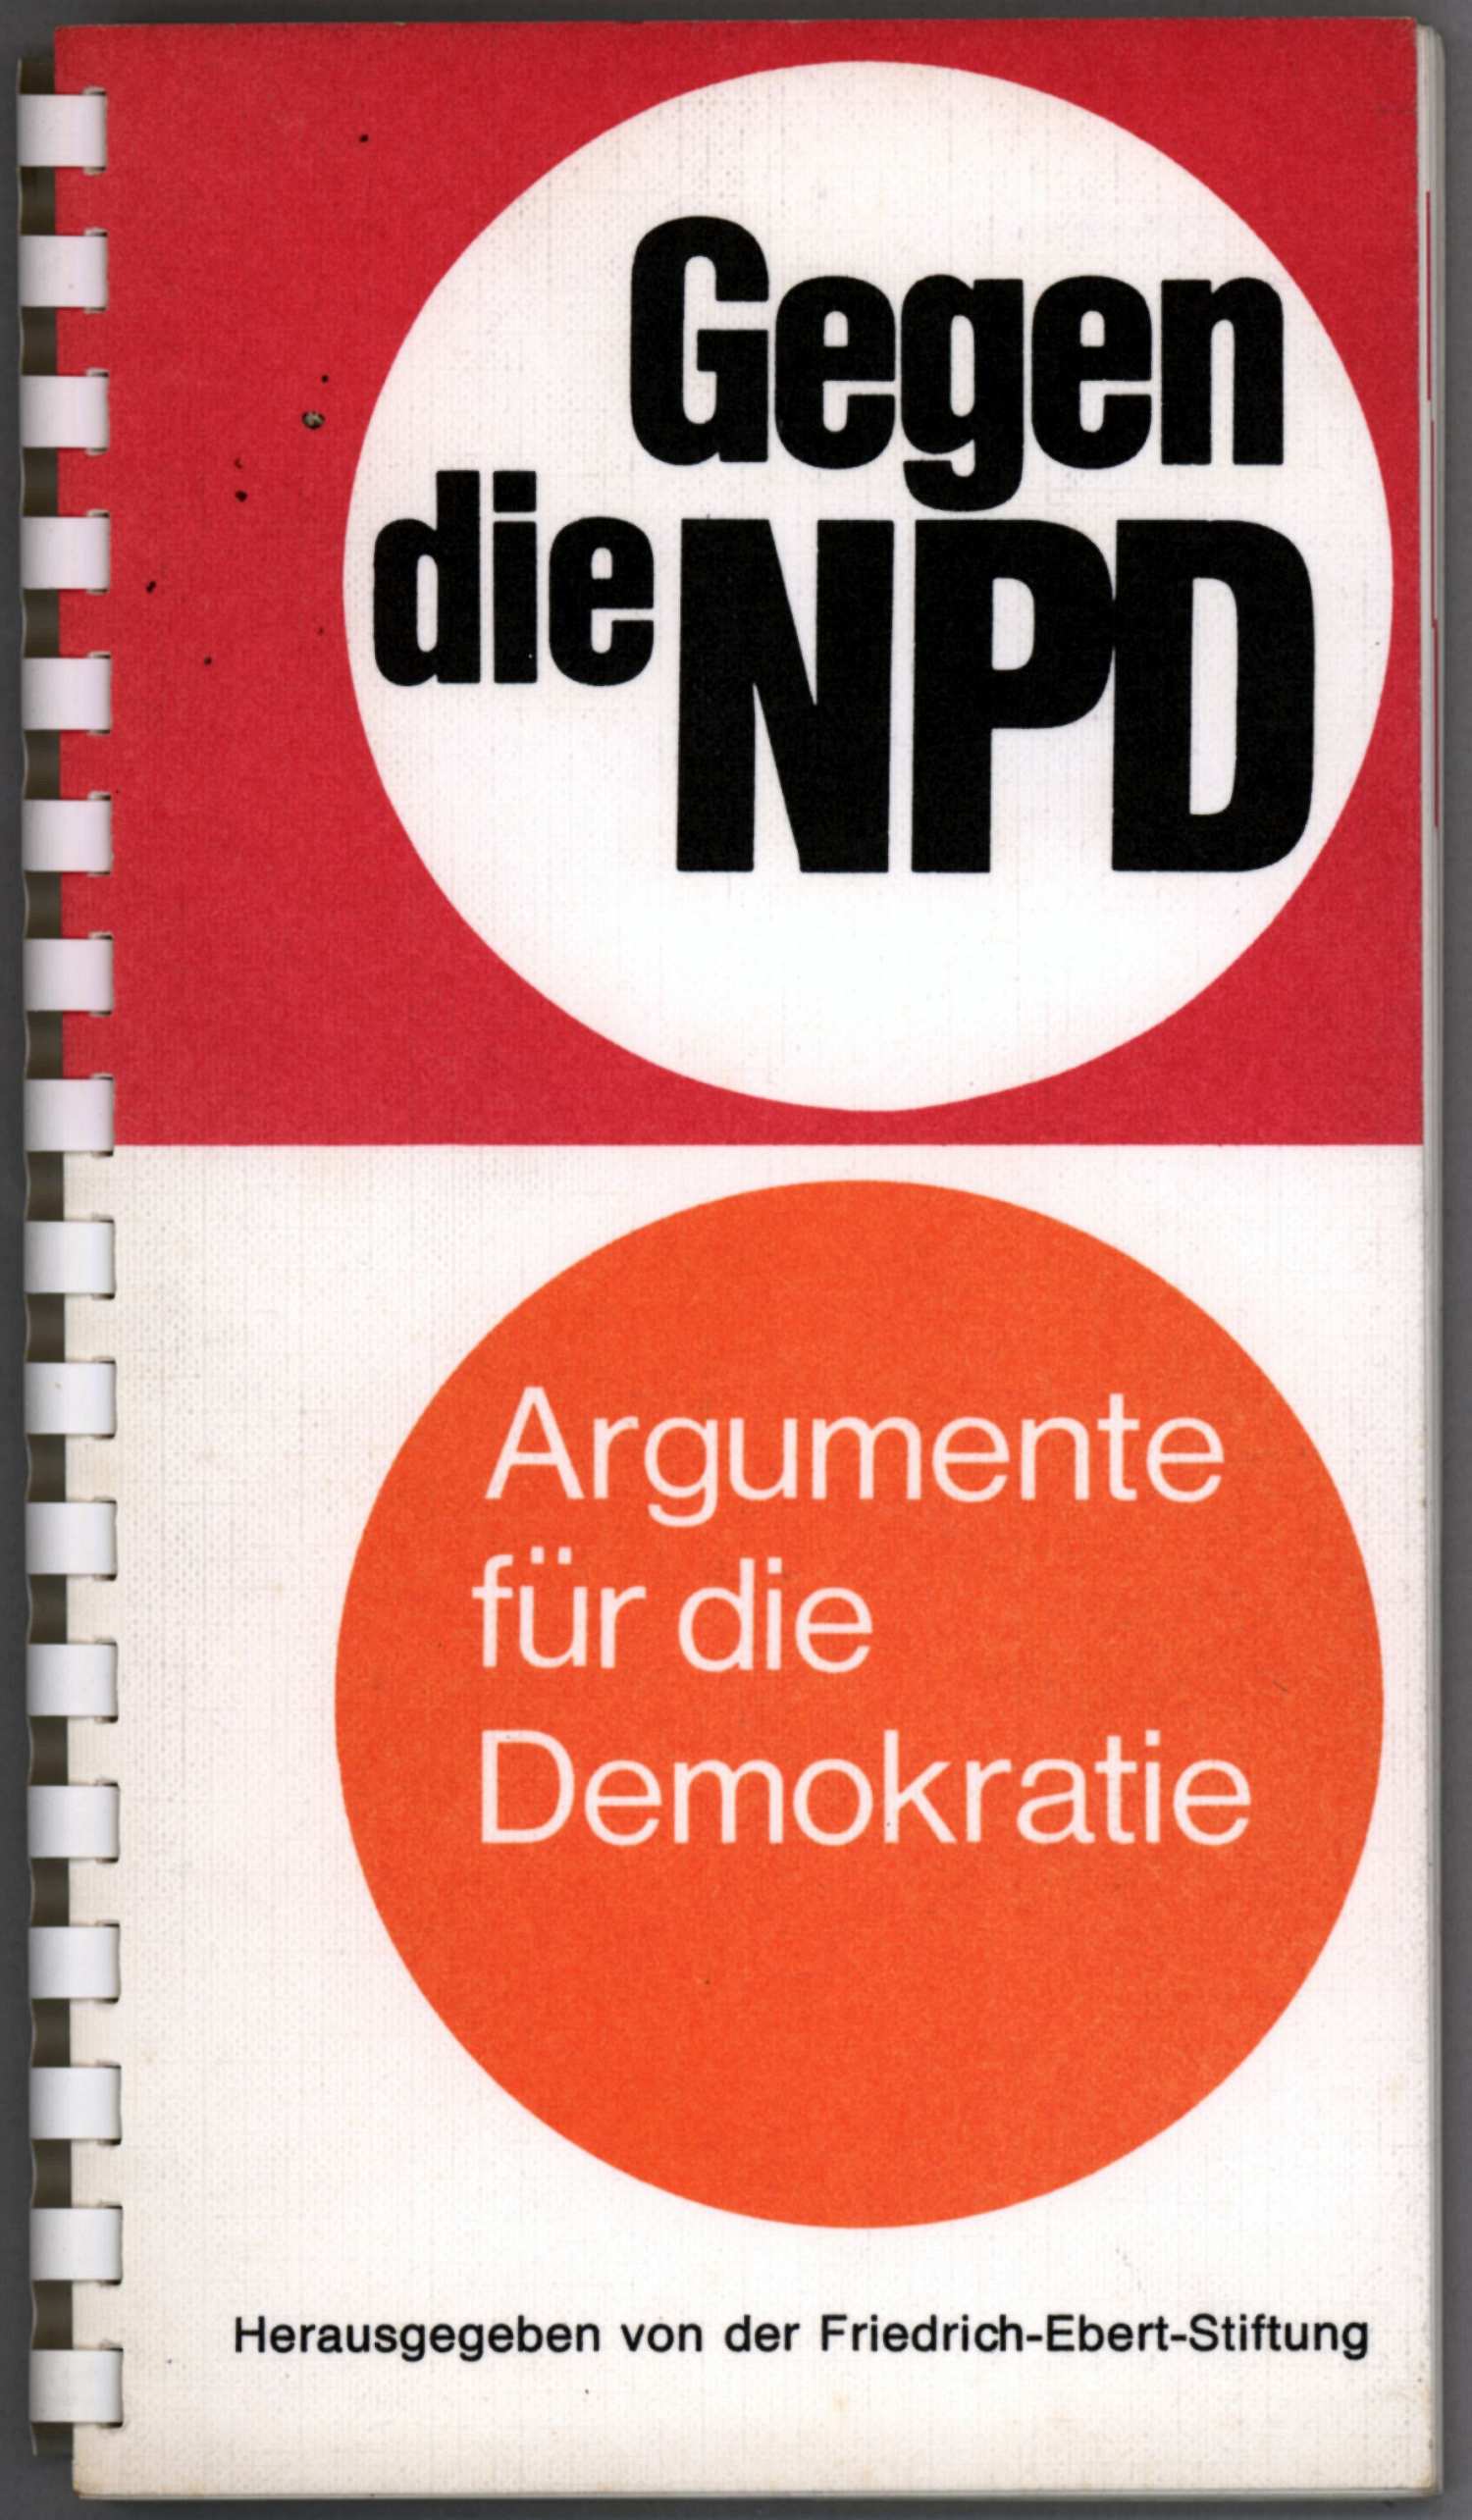 Von der Friedrich-Ebert-Stiftung herausgegebenenes Ringbuch mit dem Titel: Gegen die NPD.